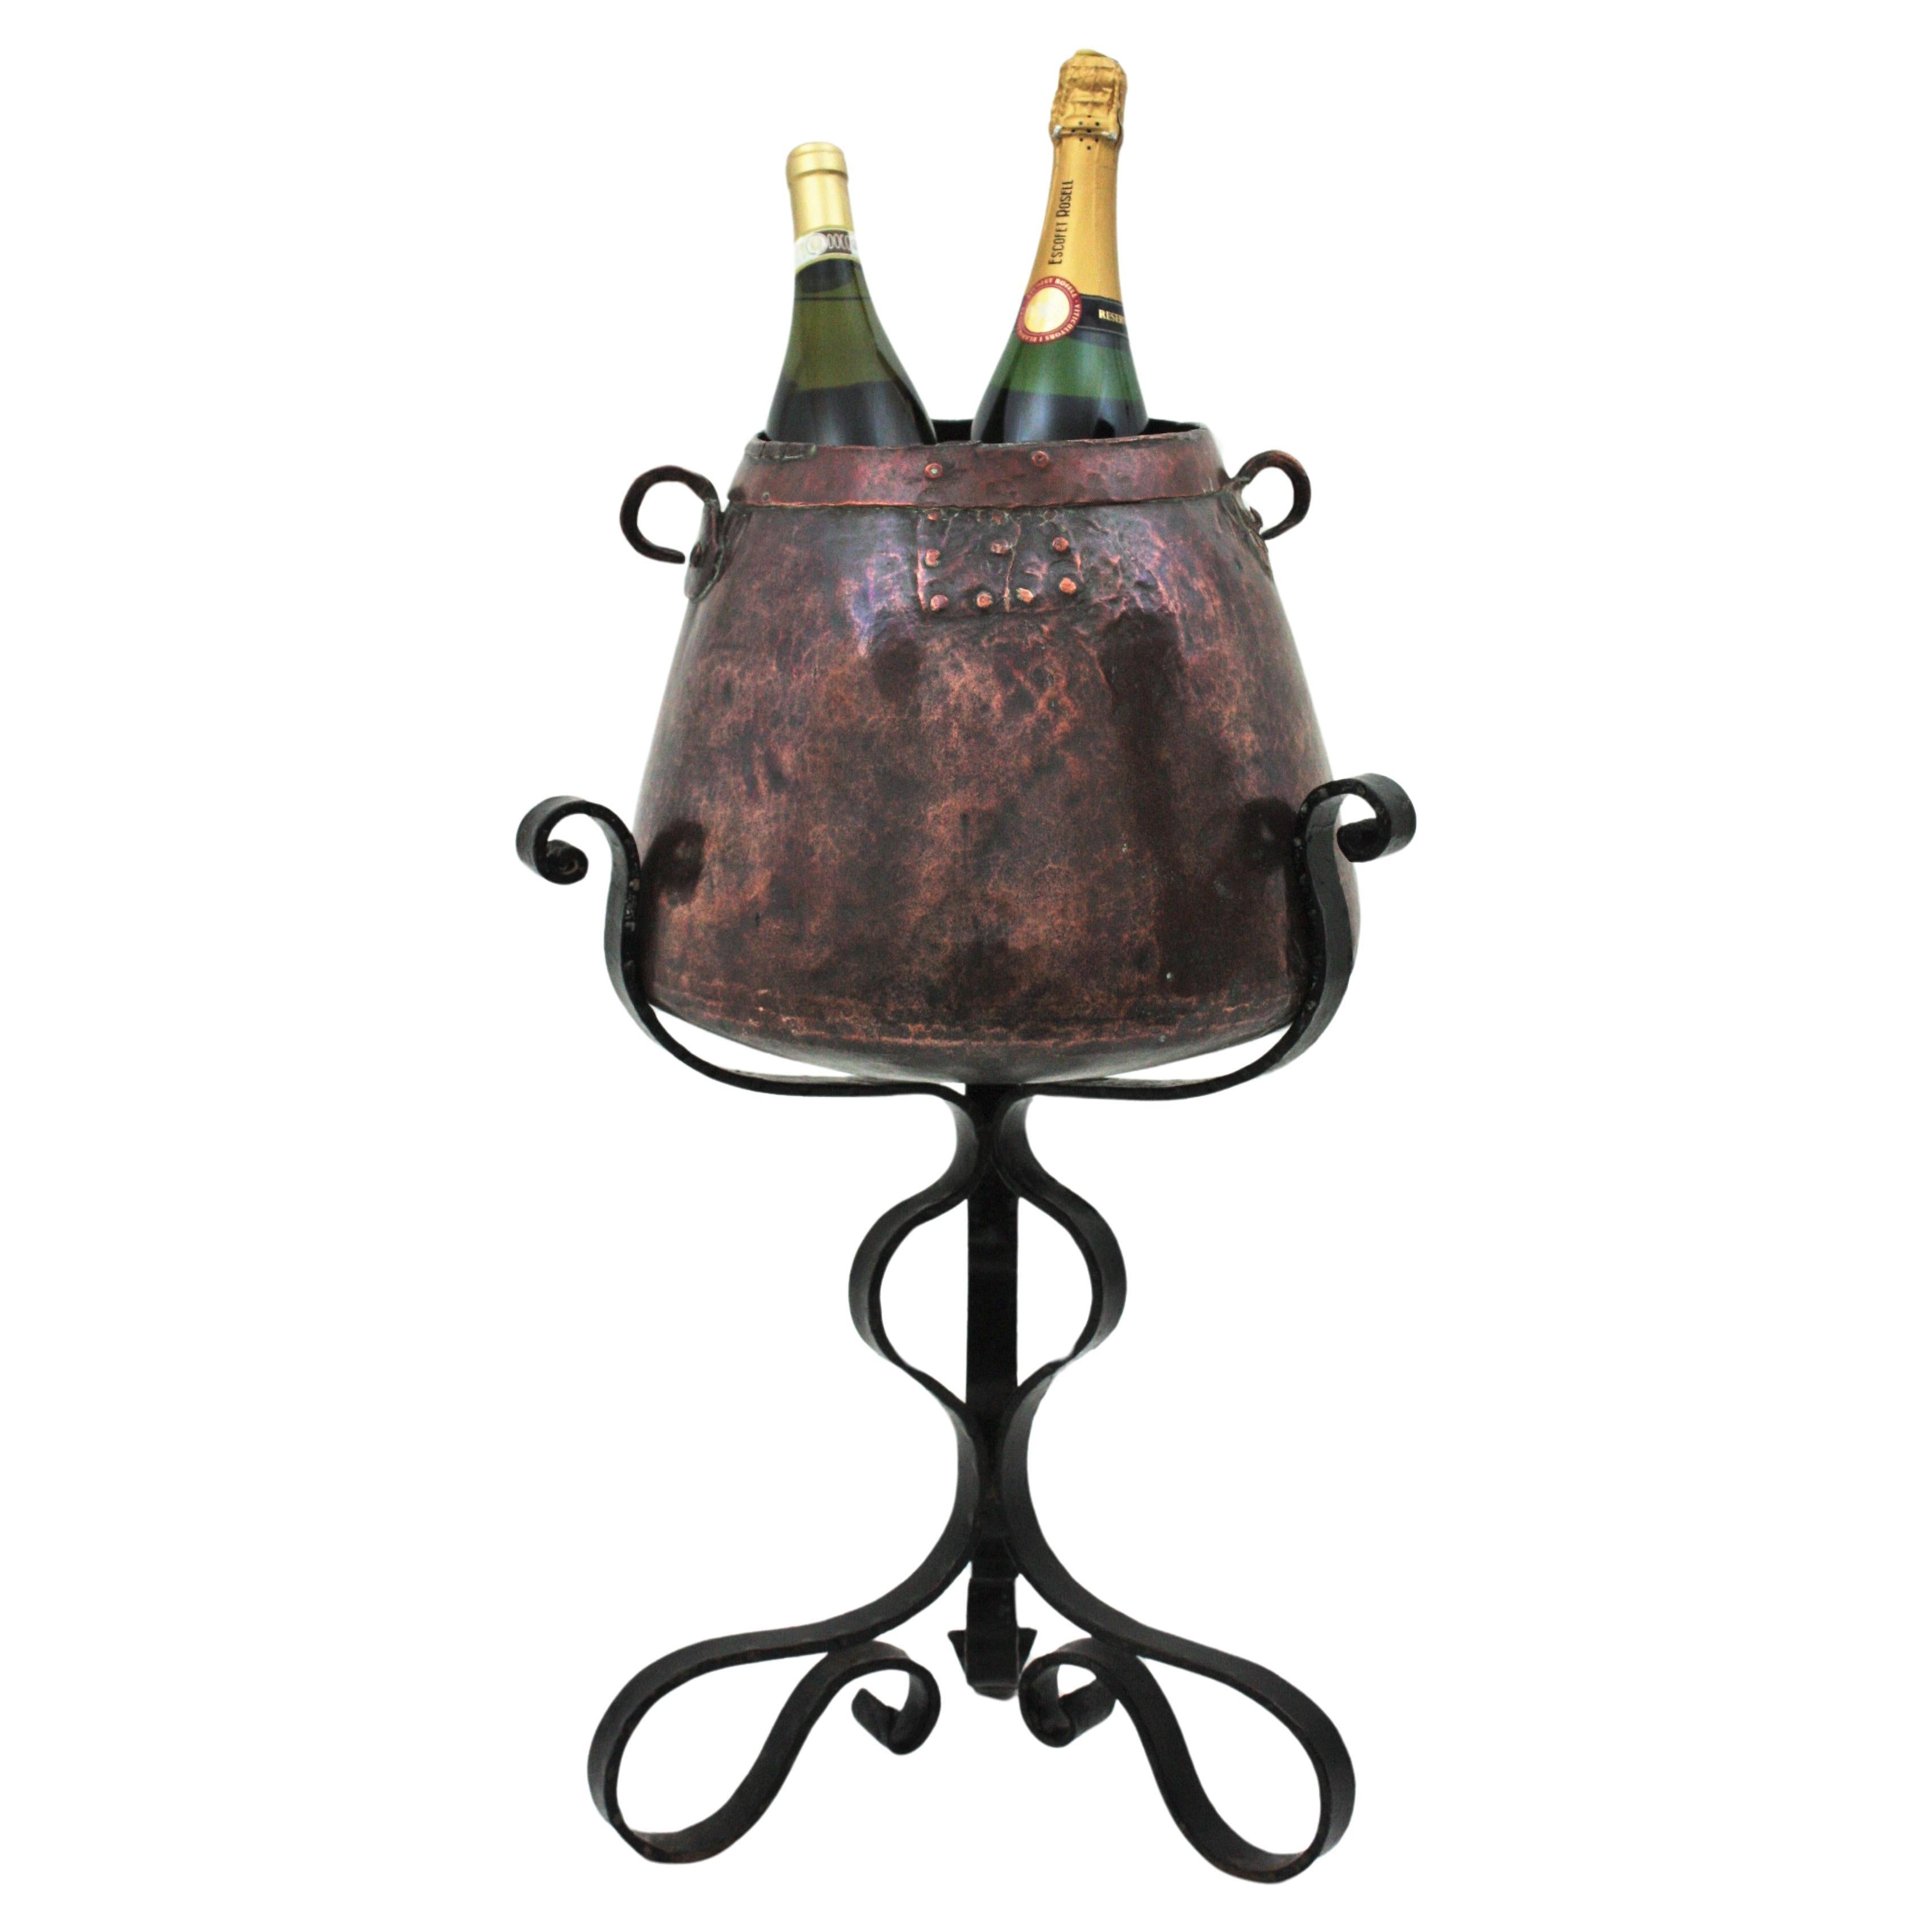 Cauldron Eiskübel Champagner Kühler auf Tripod Stand, Kupfer und Eisen